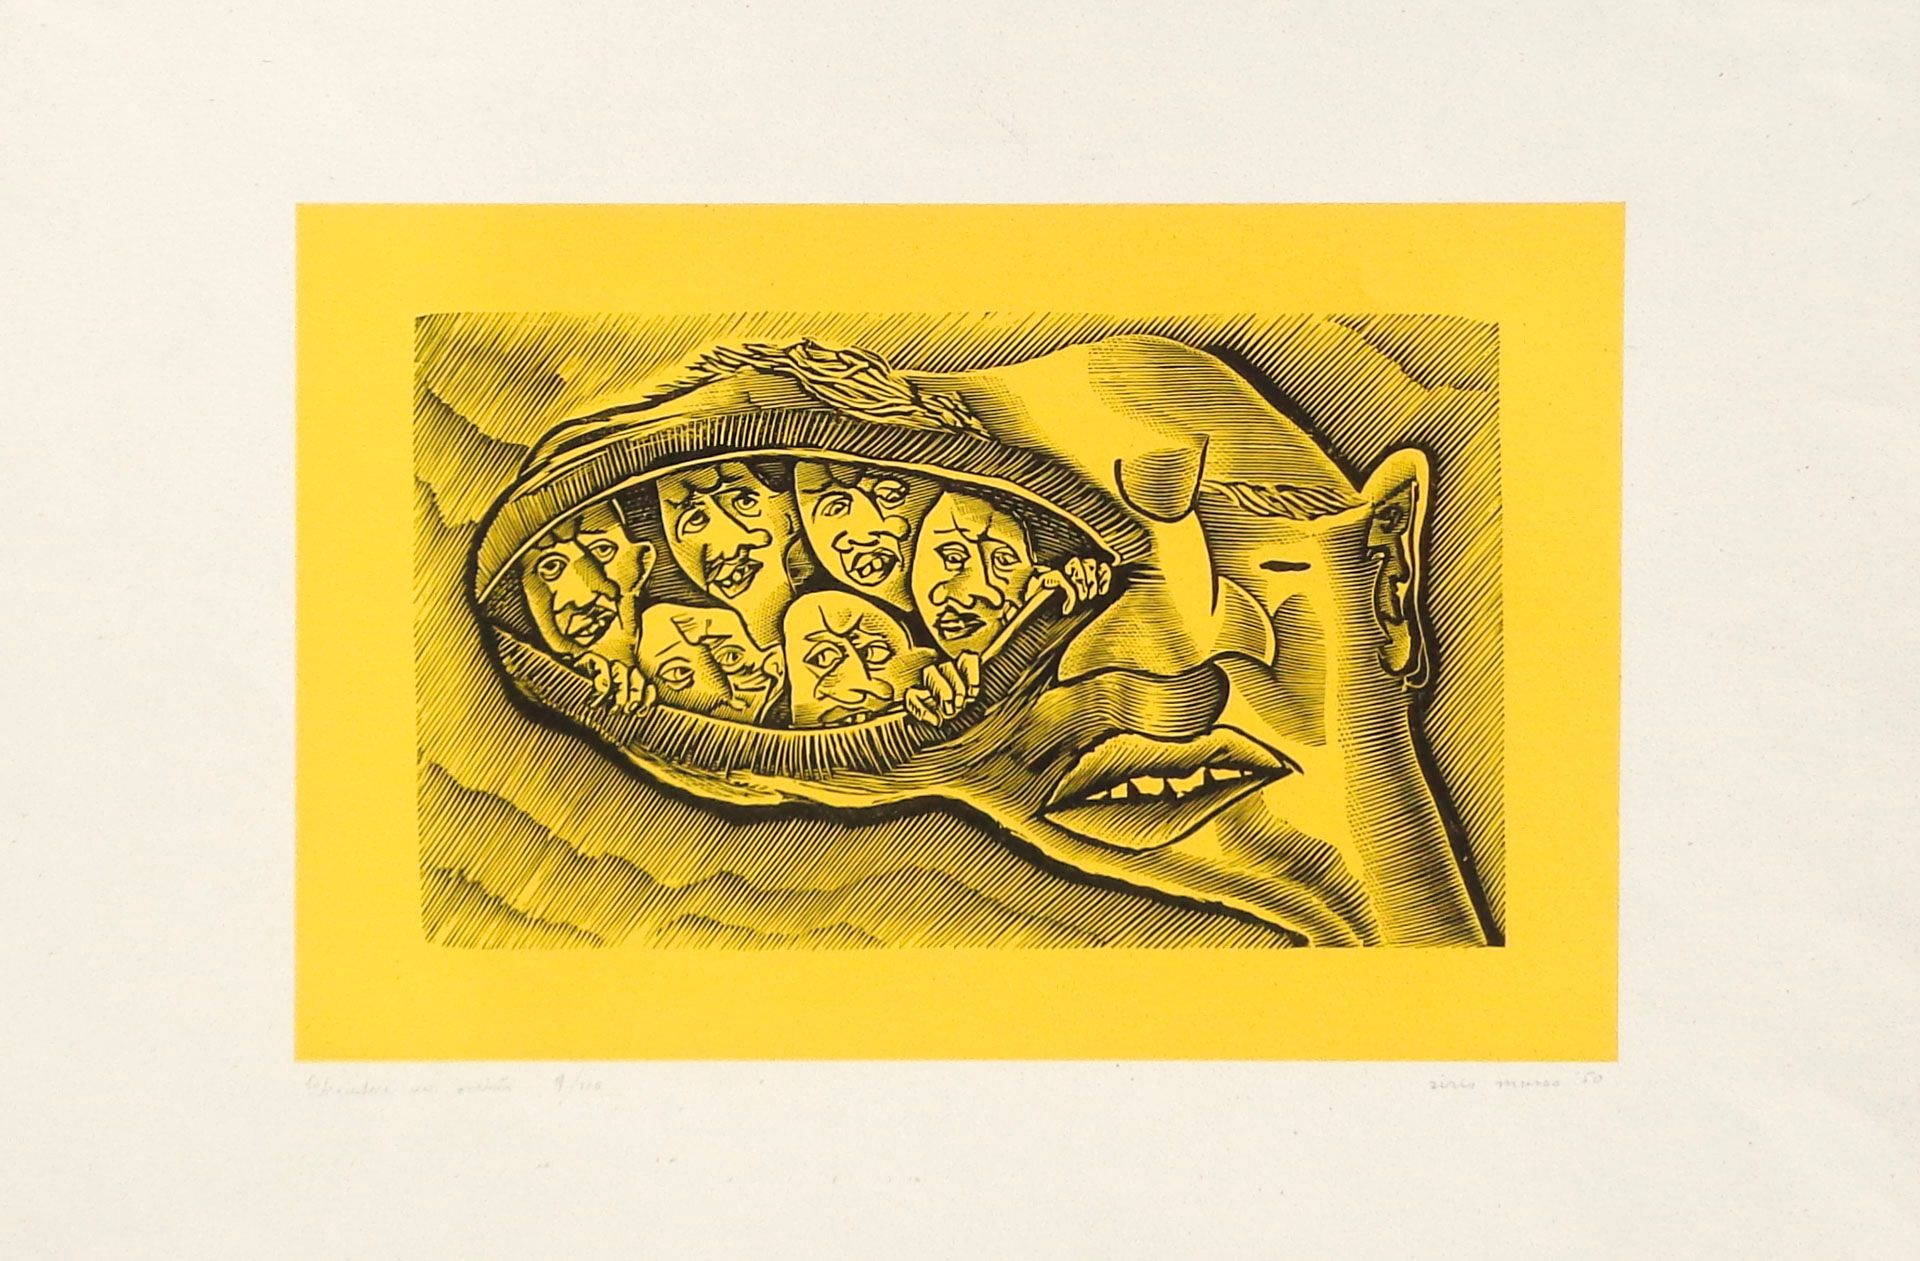 Sirio Musso Chiudere un occhio, 1950;Litografia a col., 34 x 49,8 cm_x000D_

Fir&hellip;